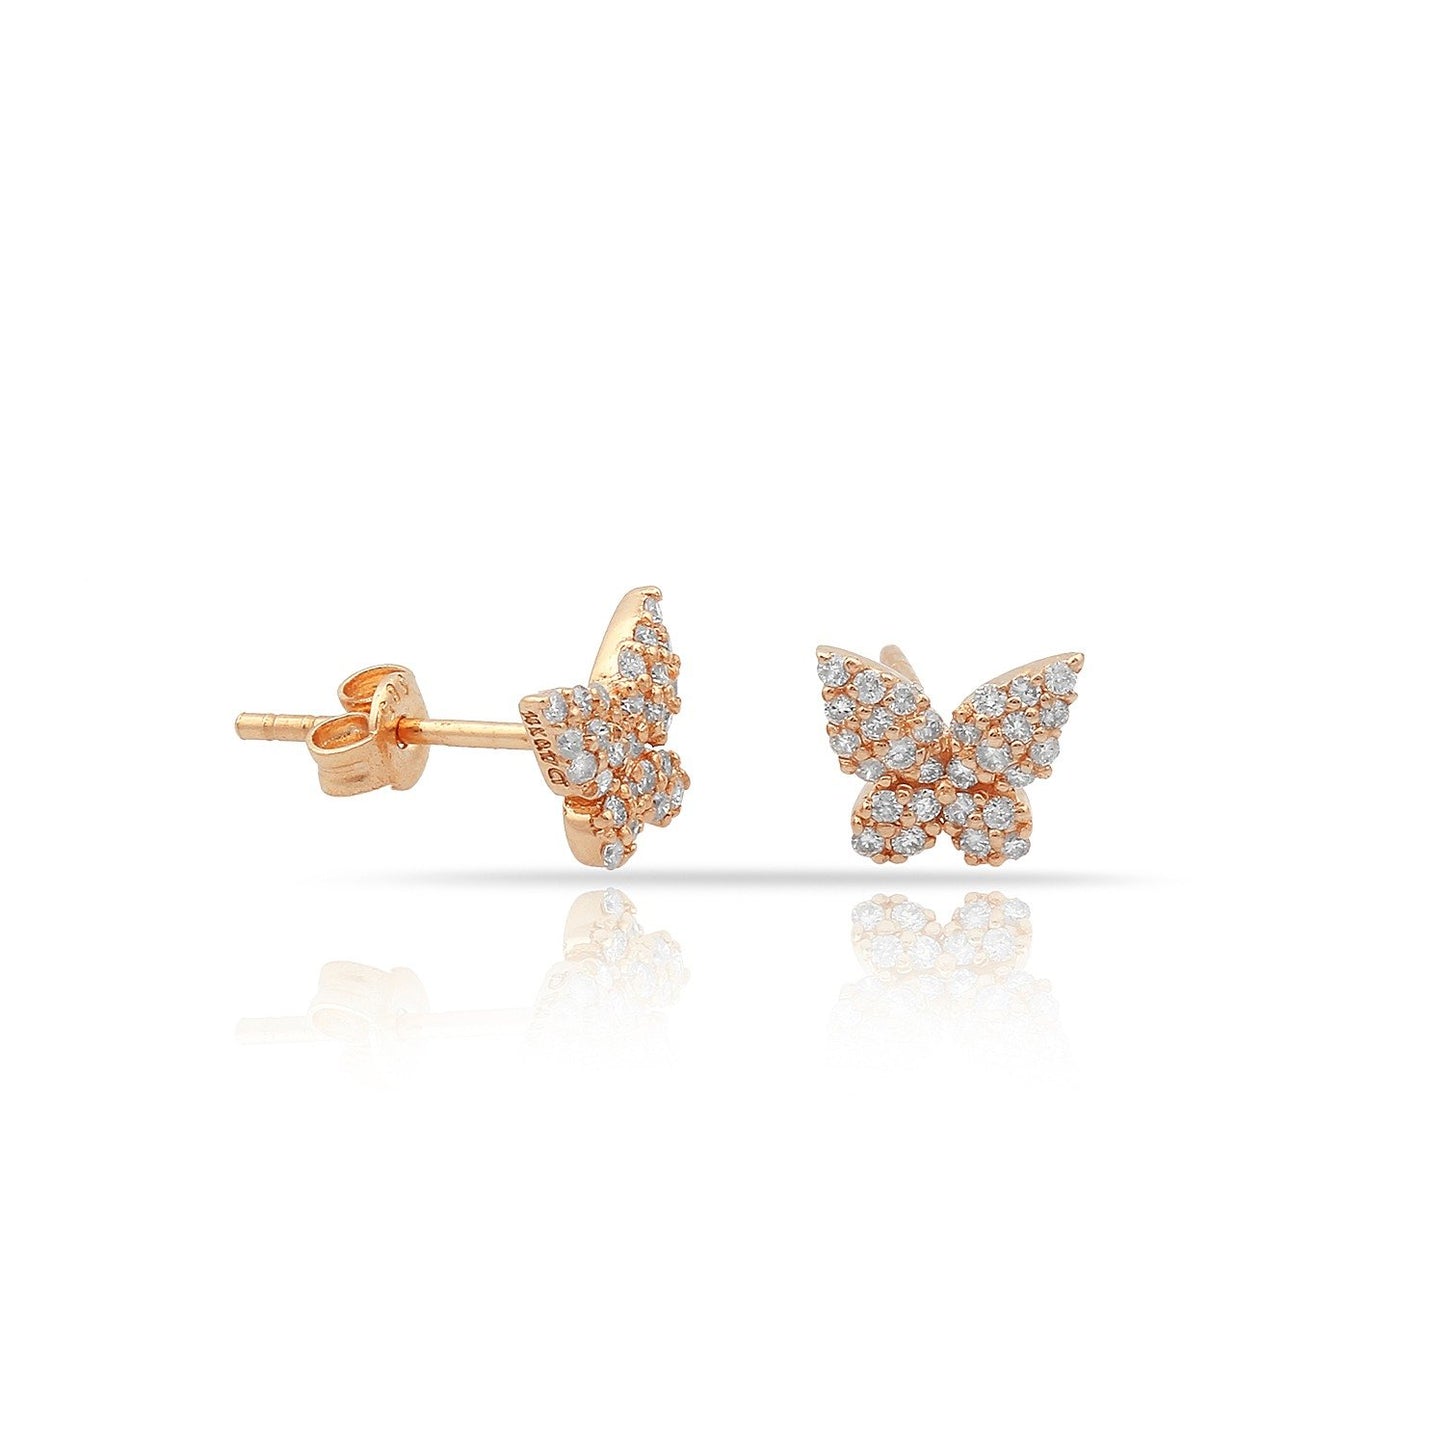 TSK Diamond Butterfly Earrings JEWELRY The Sis Kiss 14k Rose Gold